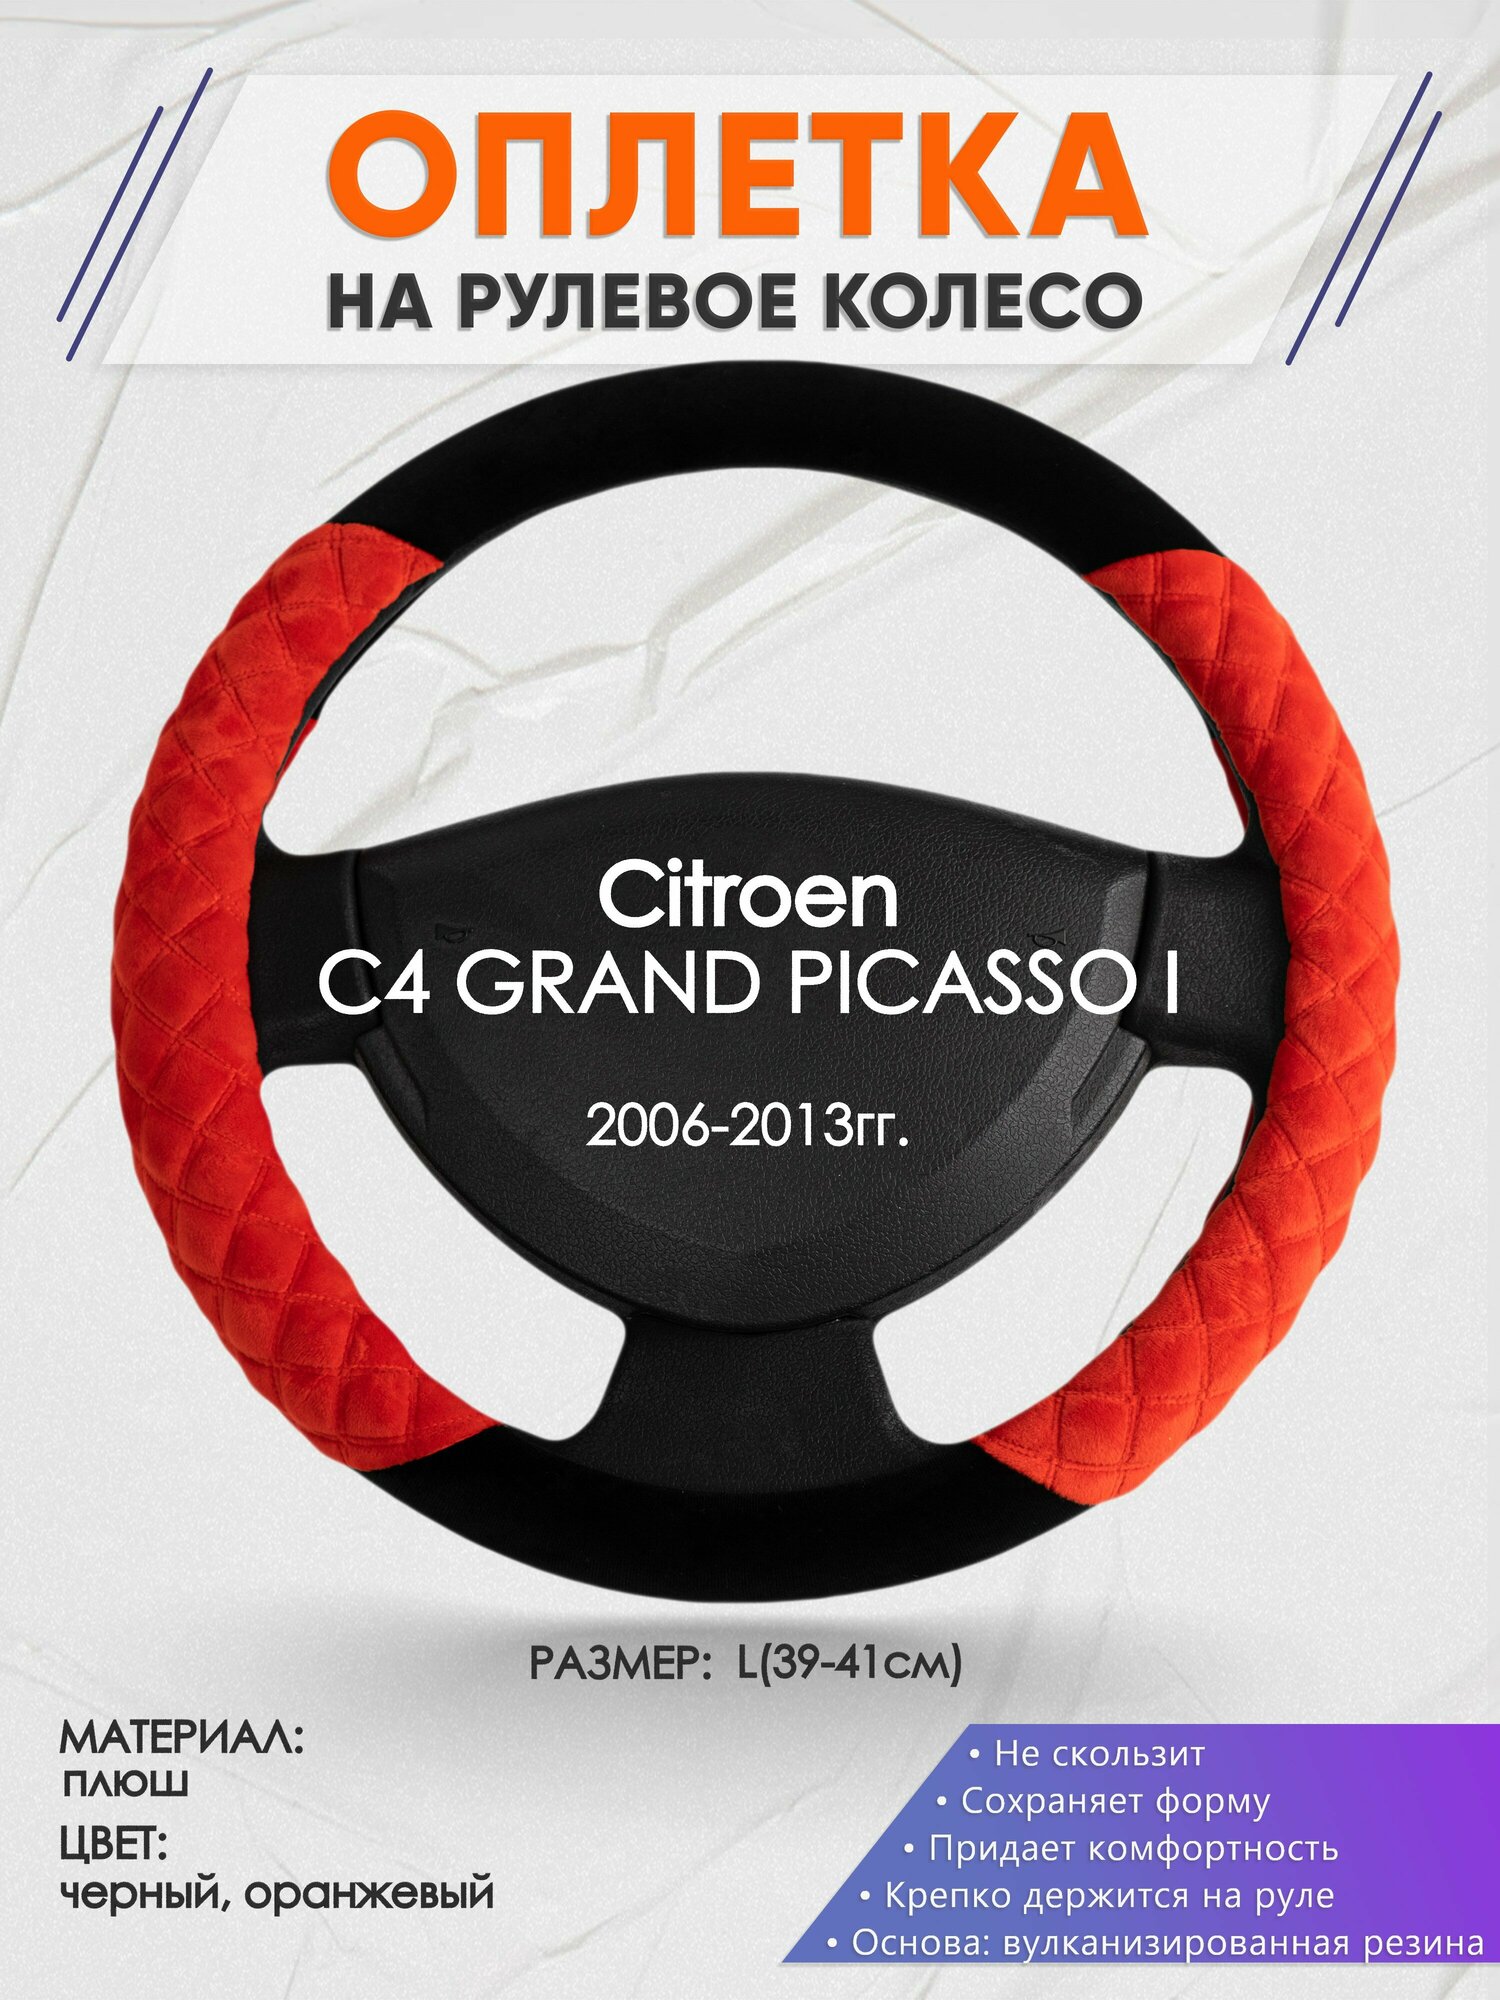 Оплетка на руль для Citroen C4 GRAND PICASSO I(Ситроен с4 гранд пикасо) 2006-2013, L(39-41см), Замша 37